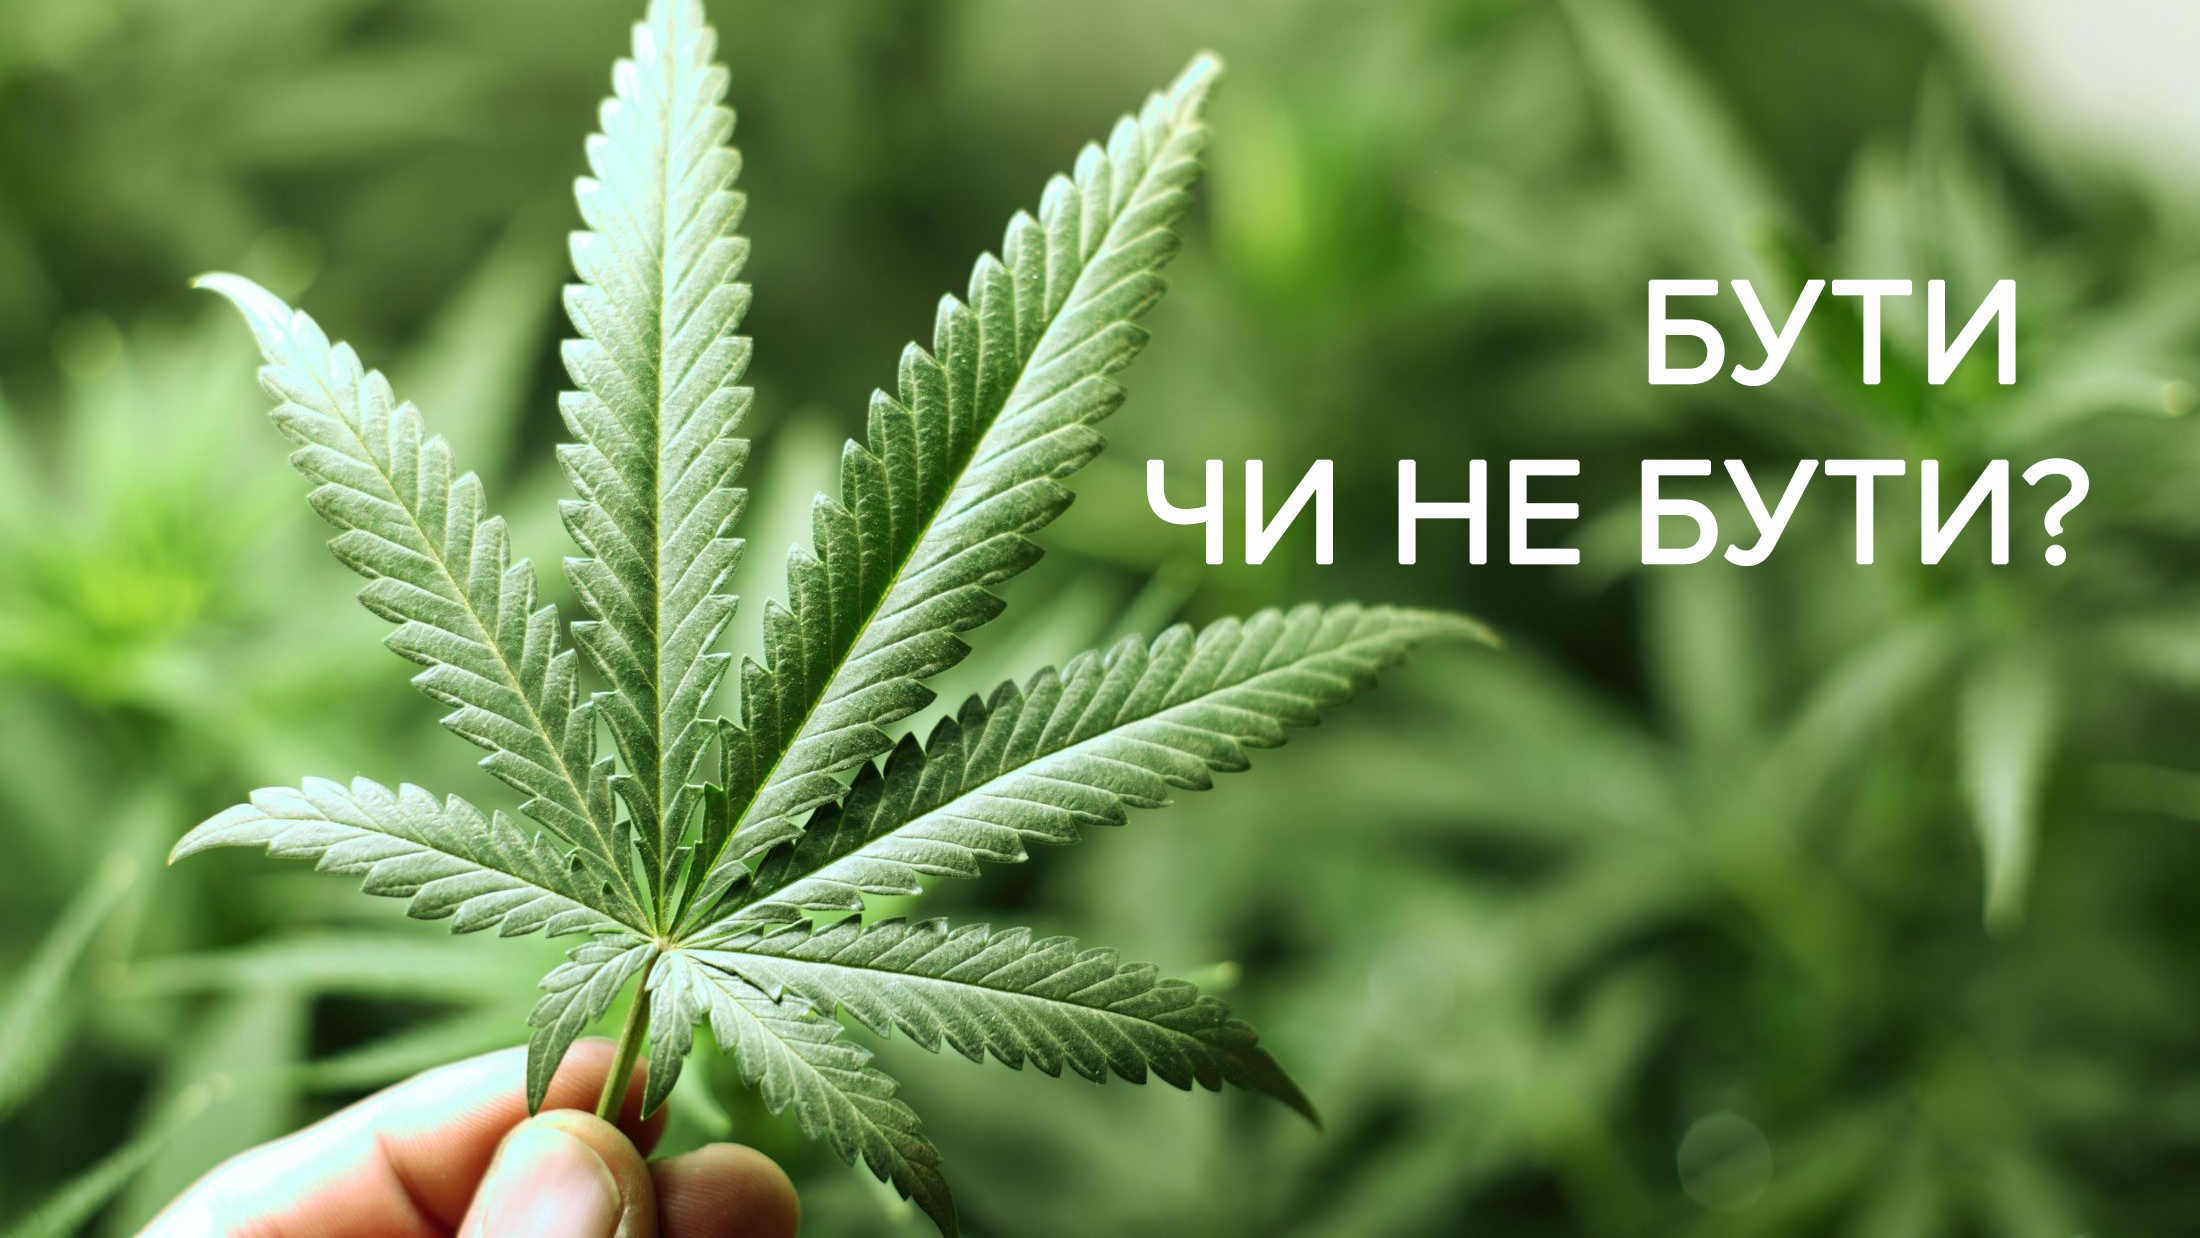 Ще один крок до легалізації: в Україні пройде Міжнародна медична канабіс-конференція